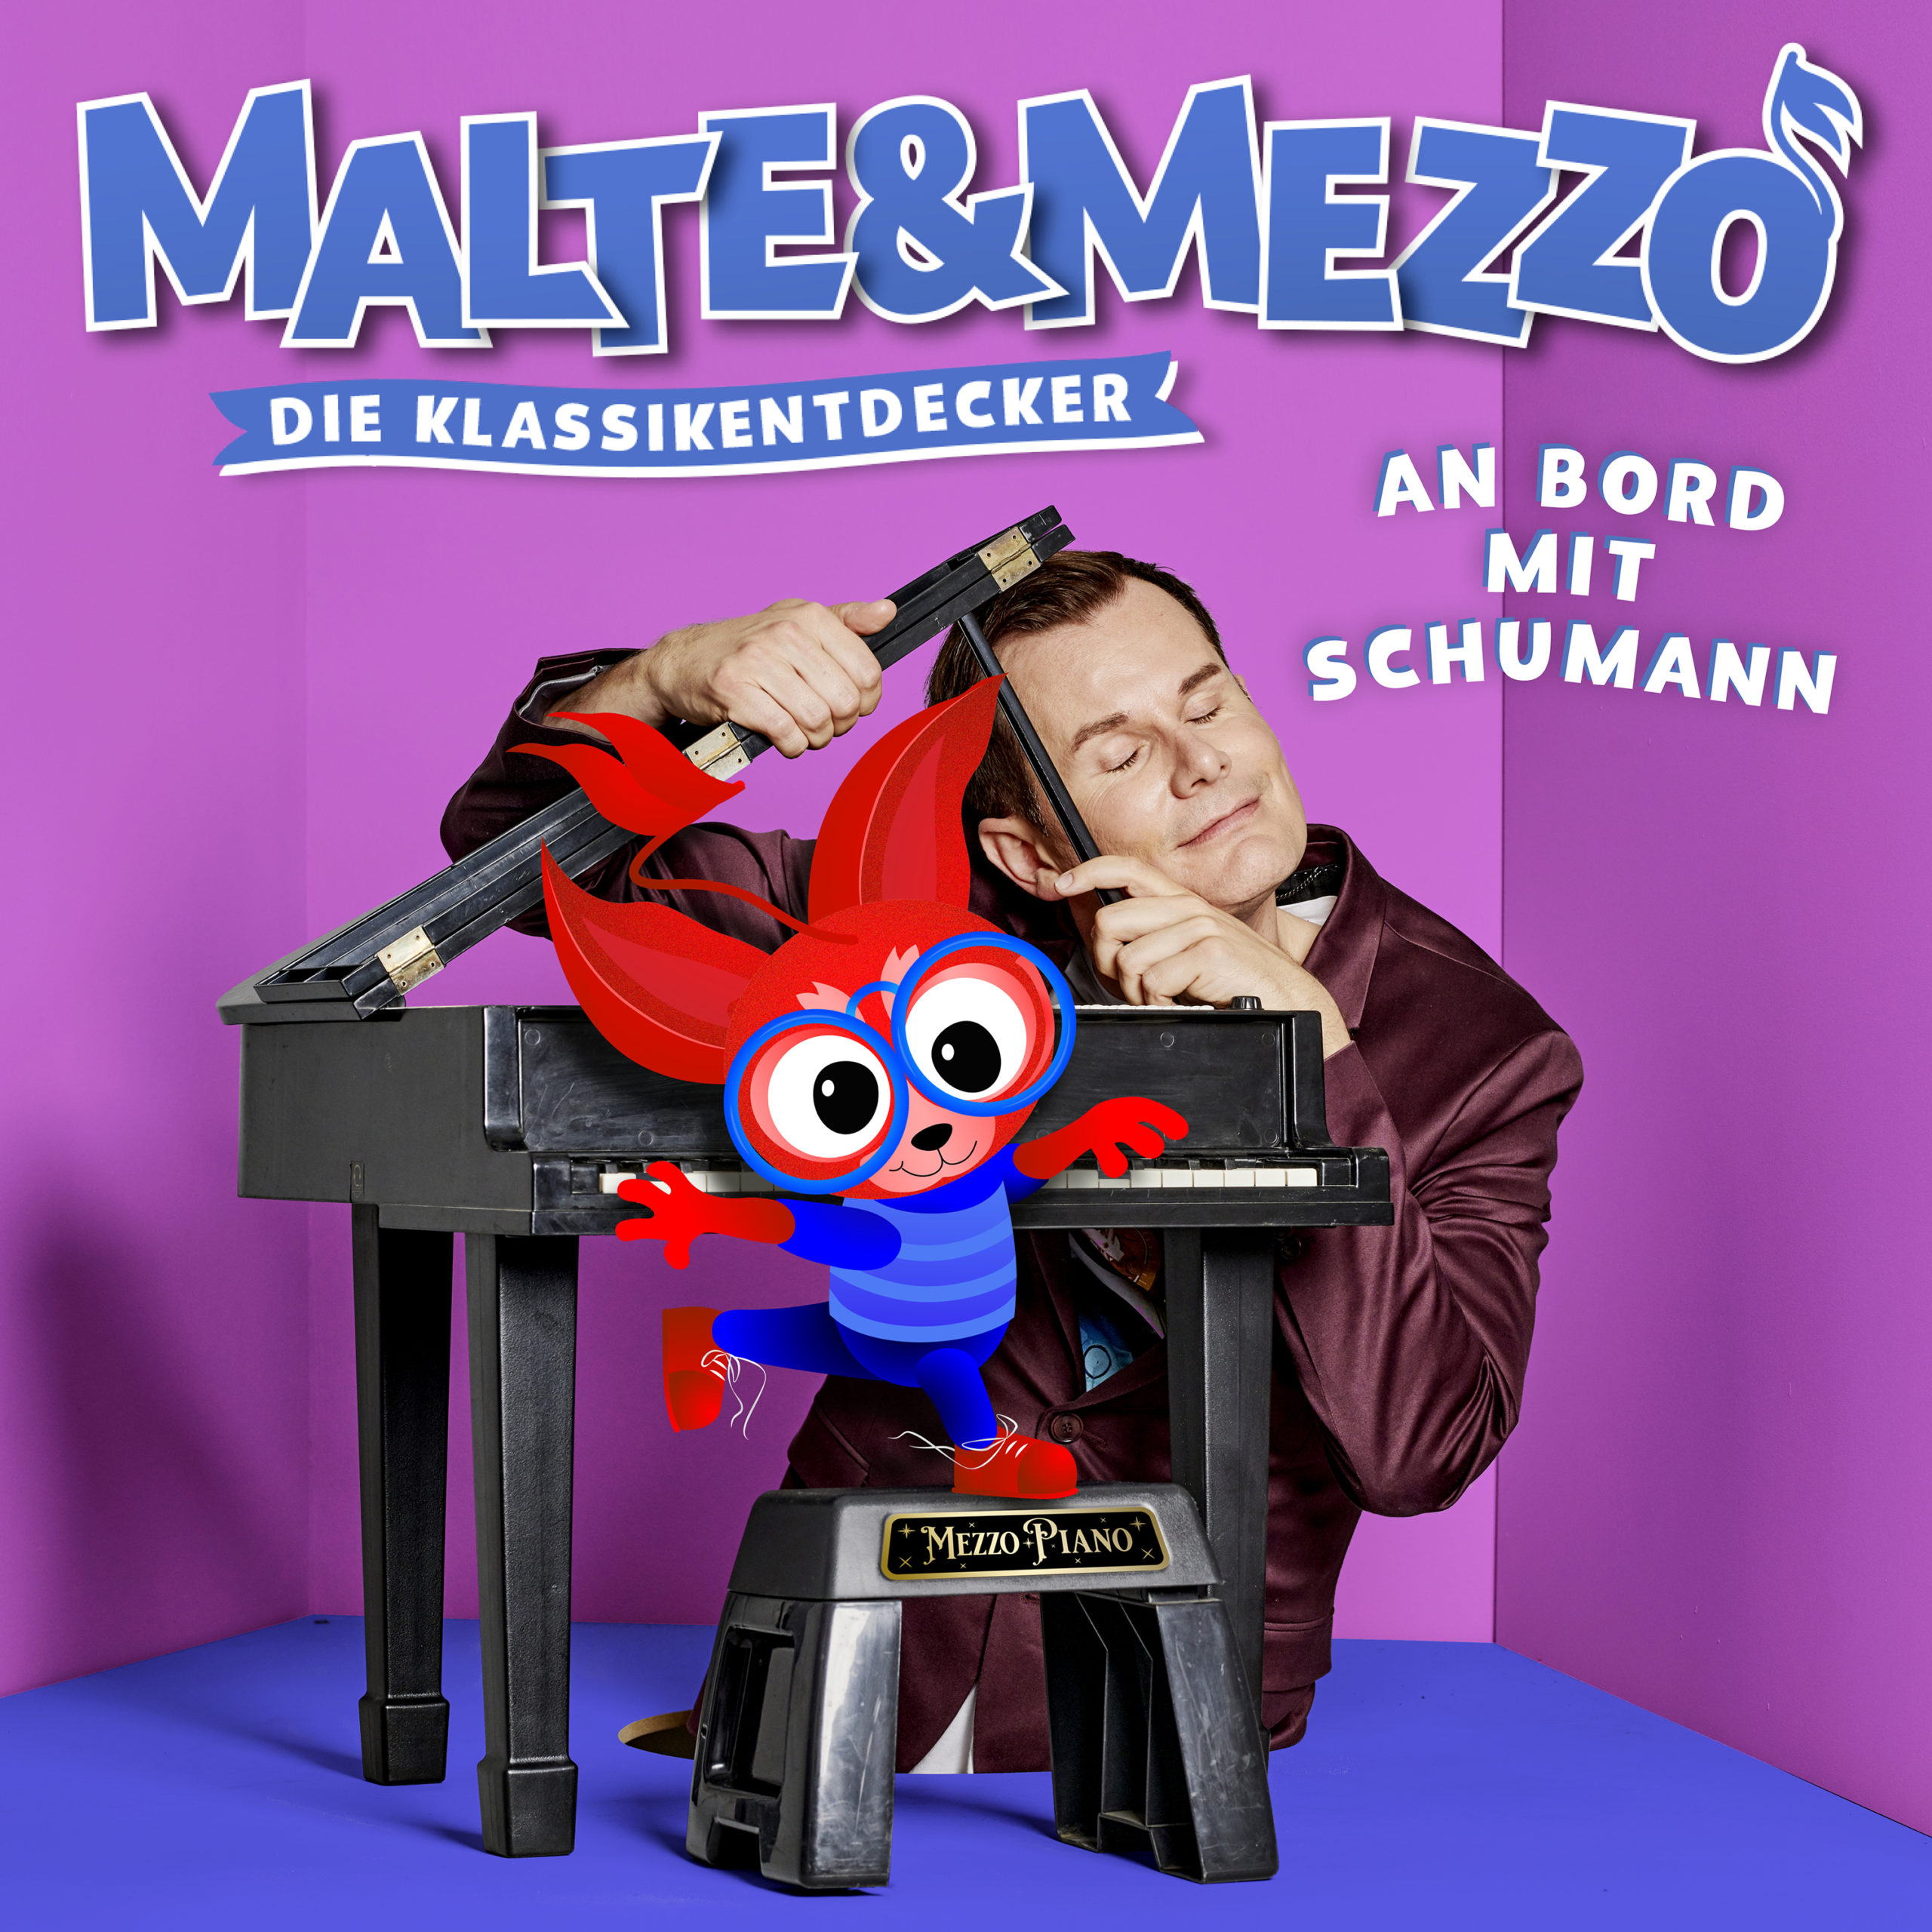 Malte Akona und Mezzo Die Klassikentdecker Cover_Schumann